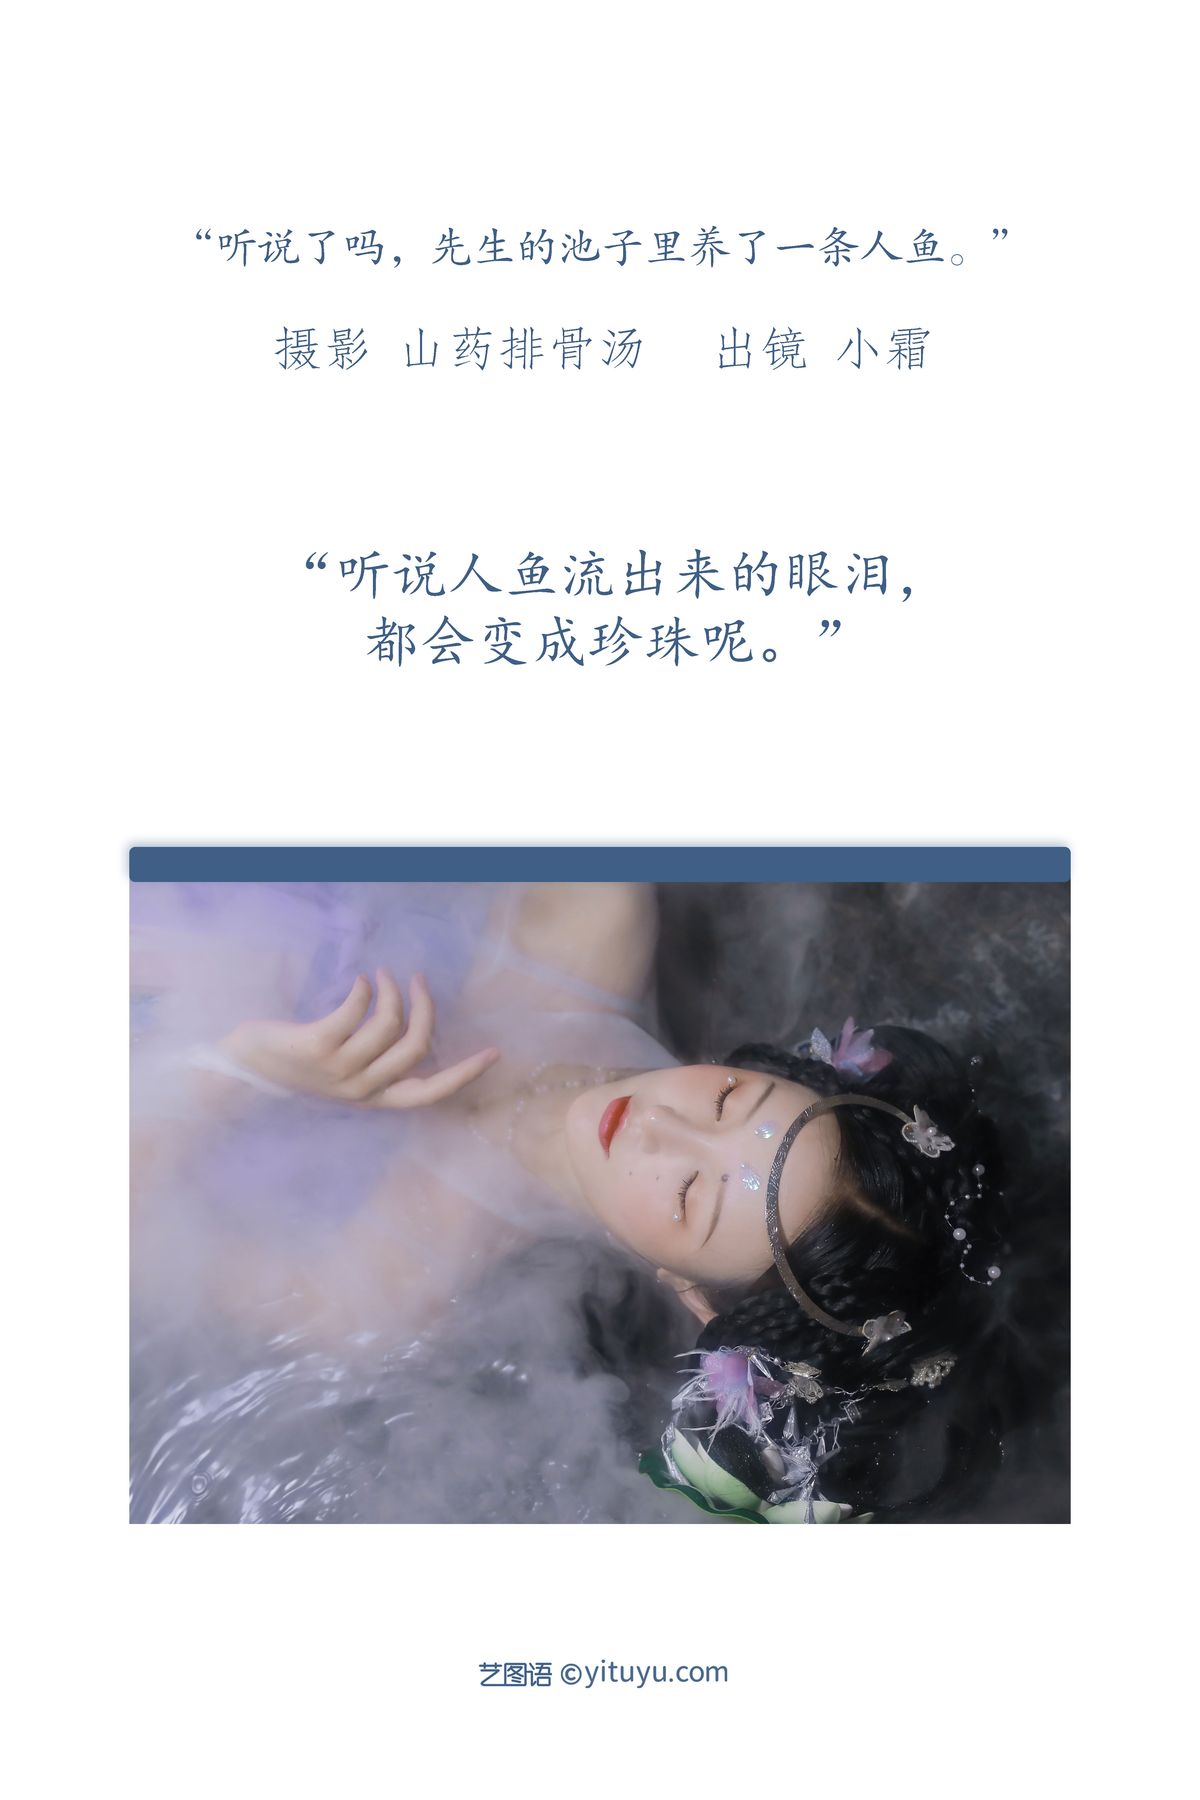 YiTuYu艺图语 Vol 3286 Xiao Shuang 0002 5594406298.jpg